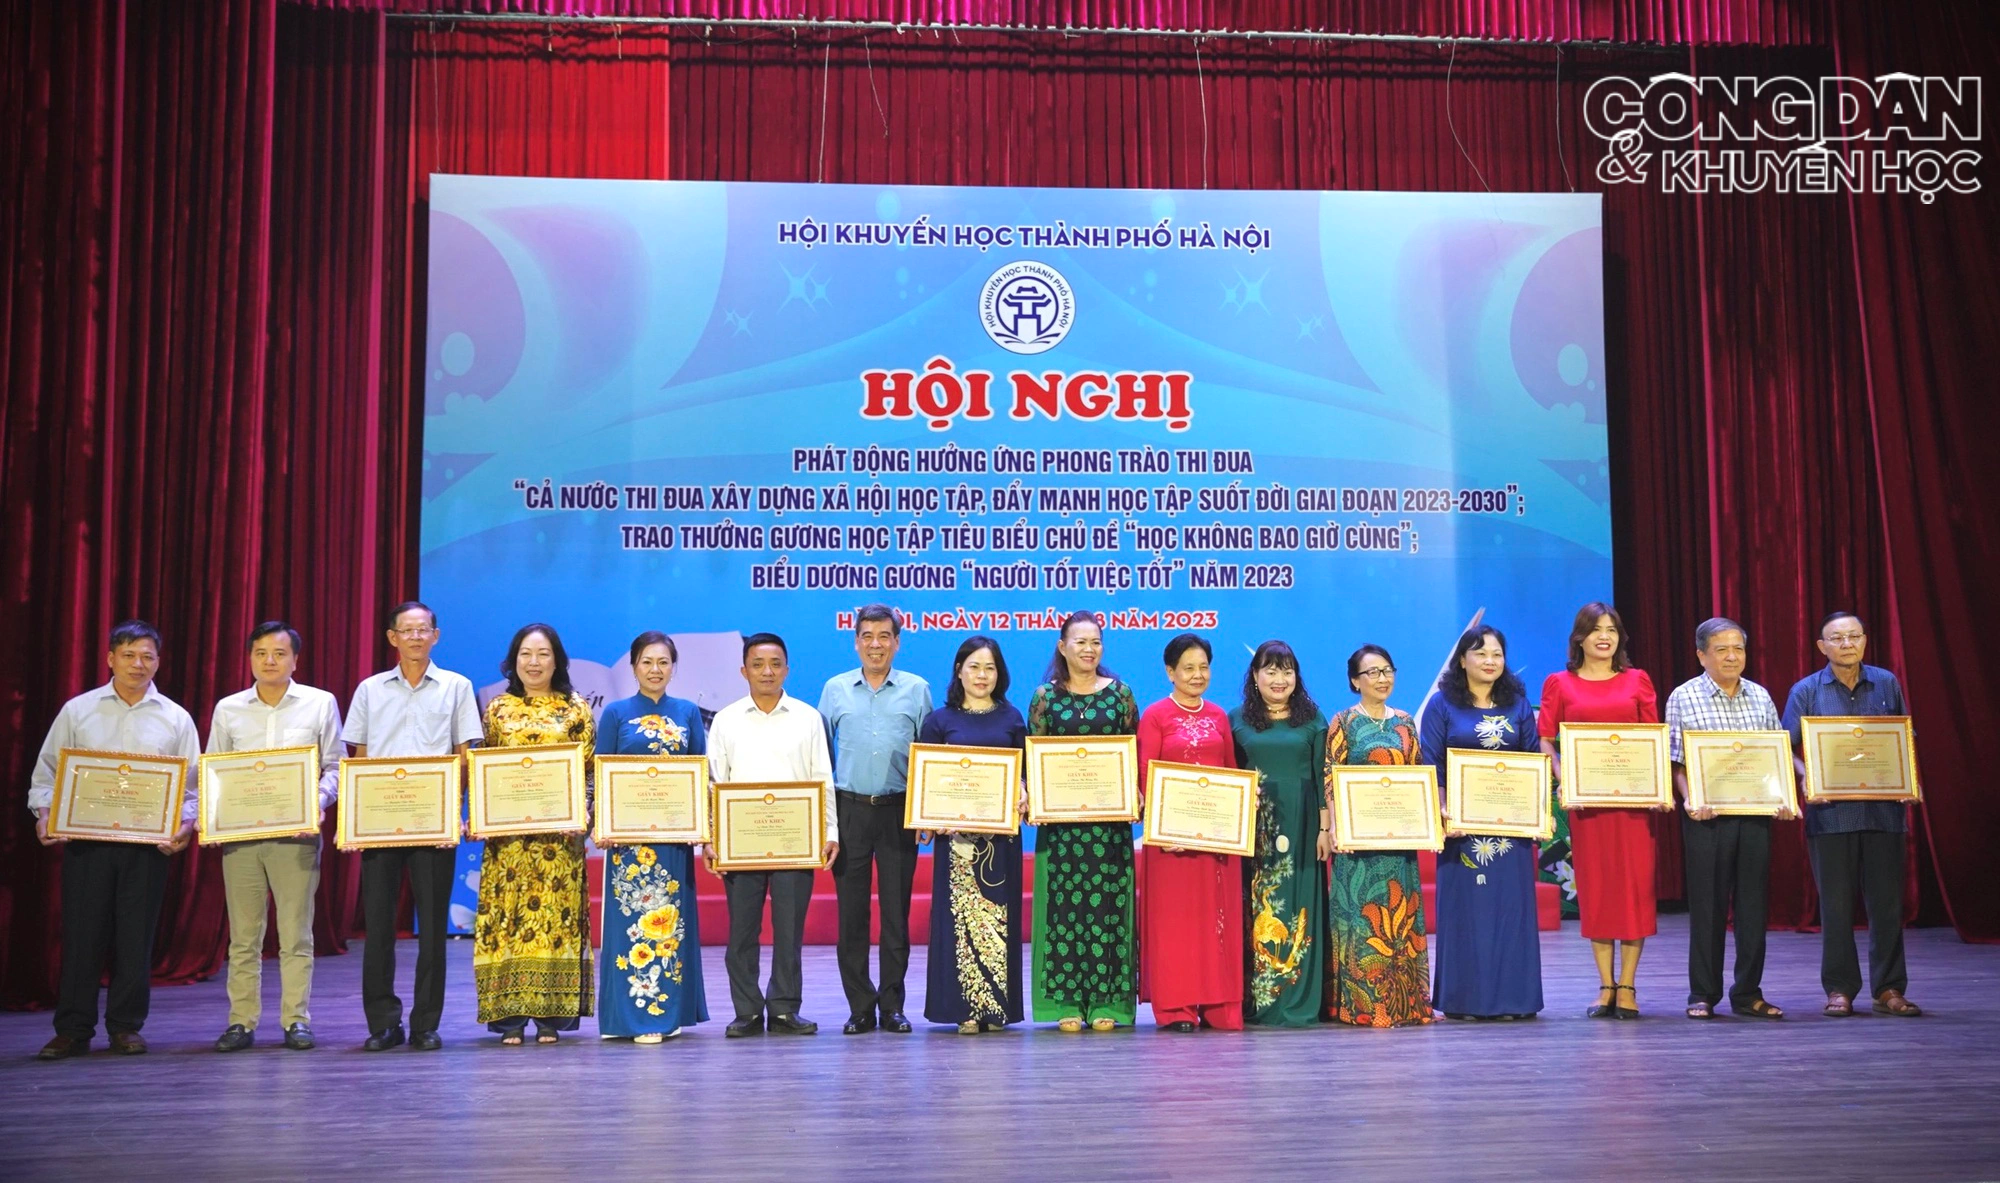 Hội Khuyến học thành phố Hà Nội phát động hưởng ứng phong trào thi đua xây dựng xã hội học tập, tự học suốt đời - Ảnh 12.